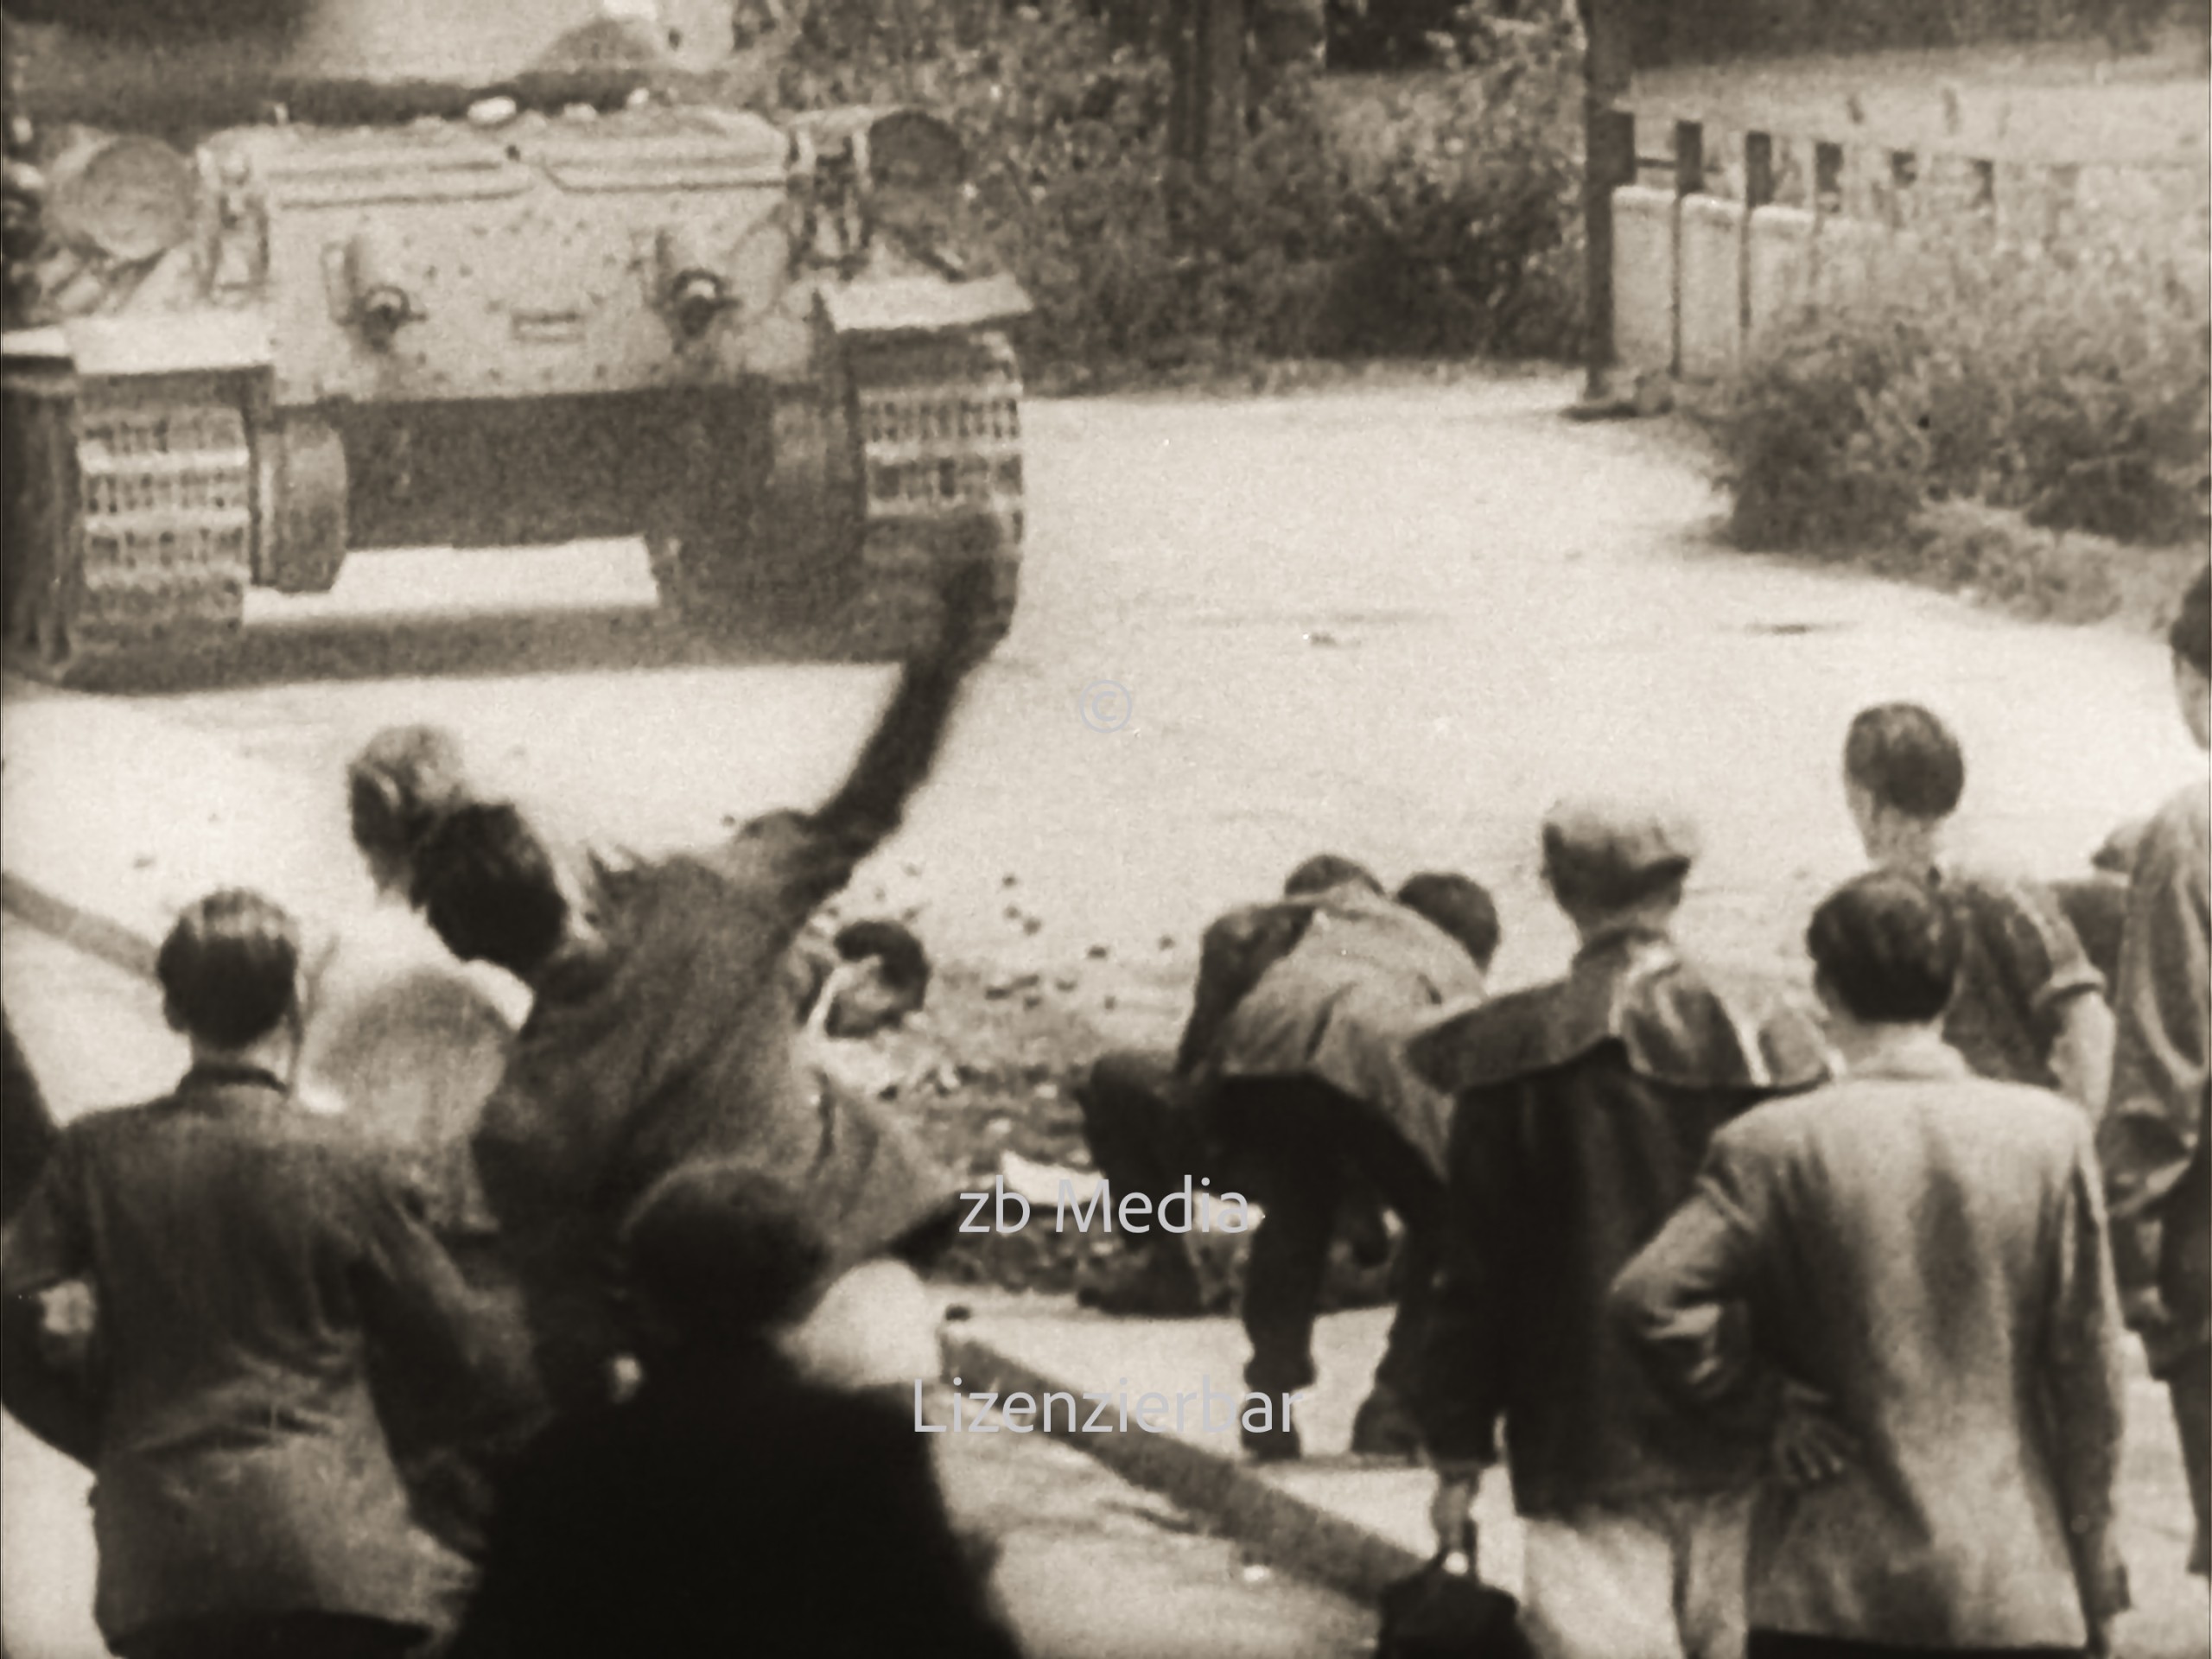 Sowjetische Panzer in Berlin am 17. Juni 1953